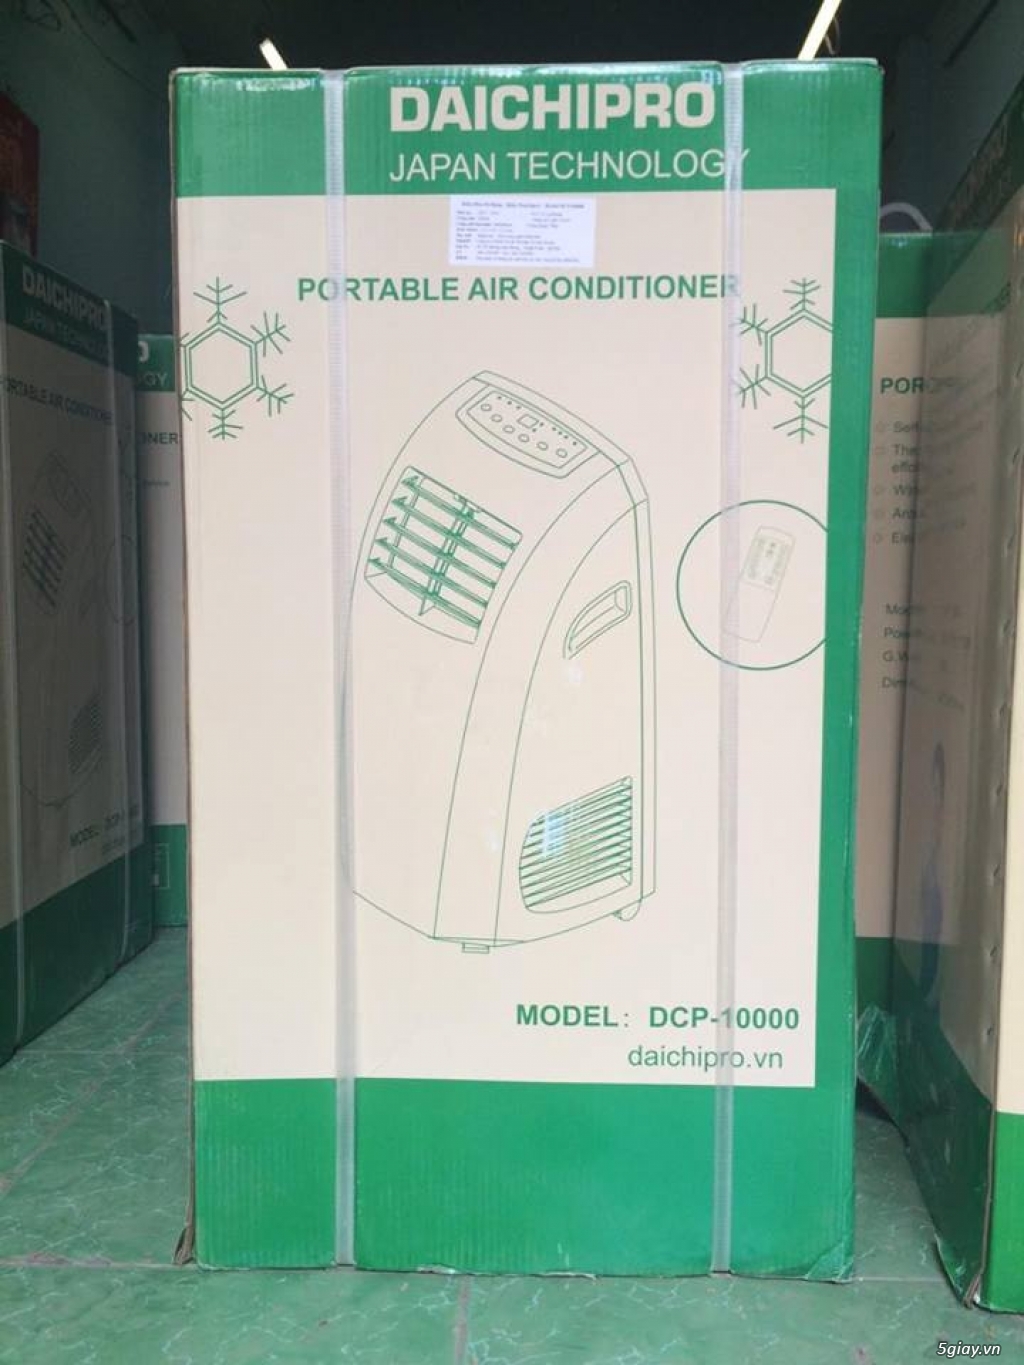 Mua bán máy lạnh mini Daichipro, điều hòa di động Nhật Bản Daichipro - 4